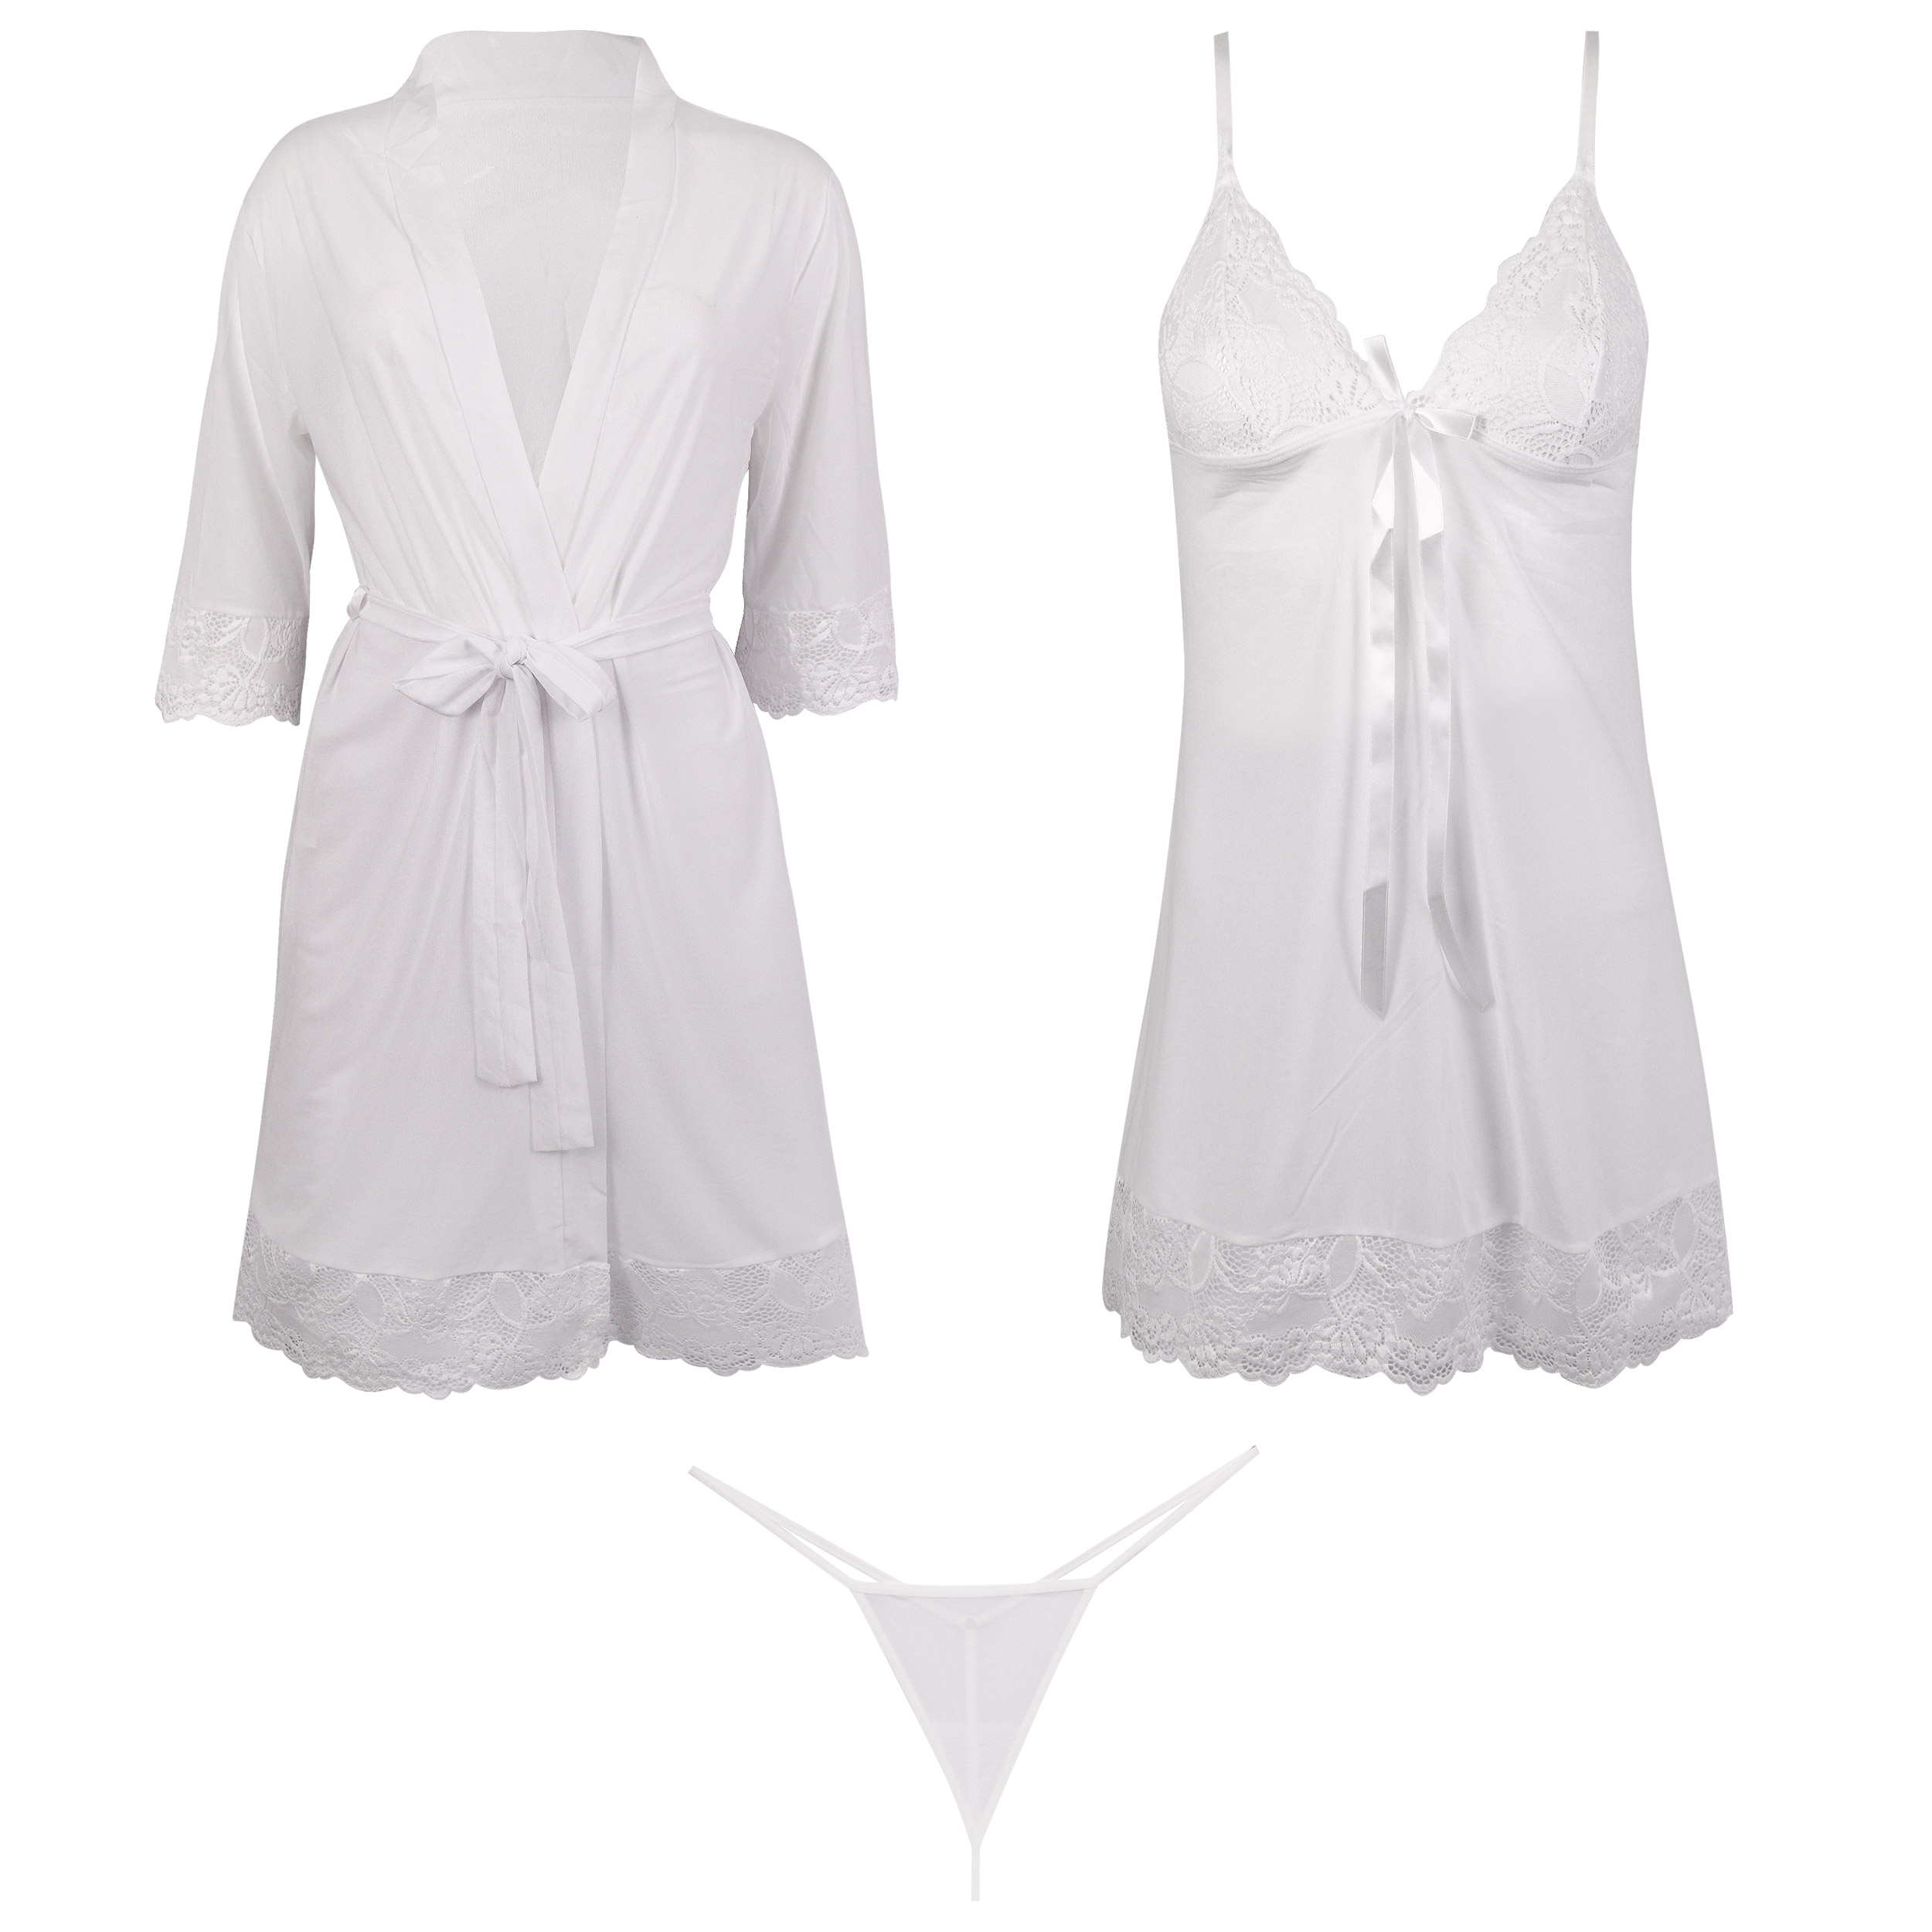 ست 3 تکه لباس خواب زنانه ماییلدا مدل 3685-804 رنگ سفید